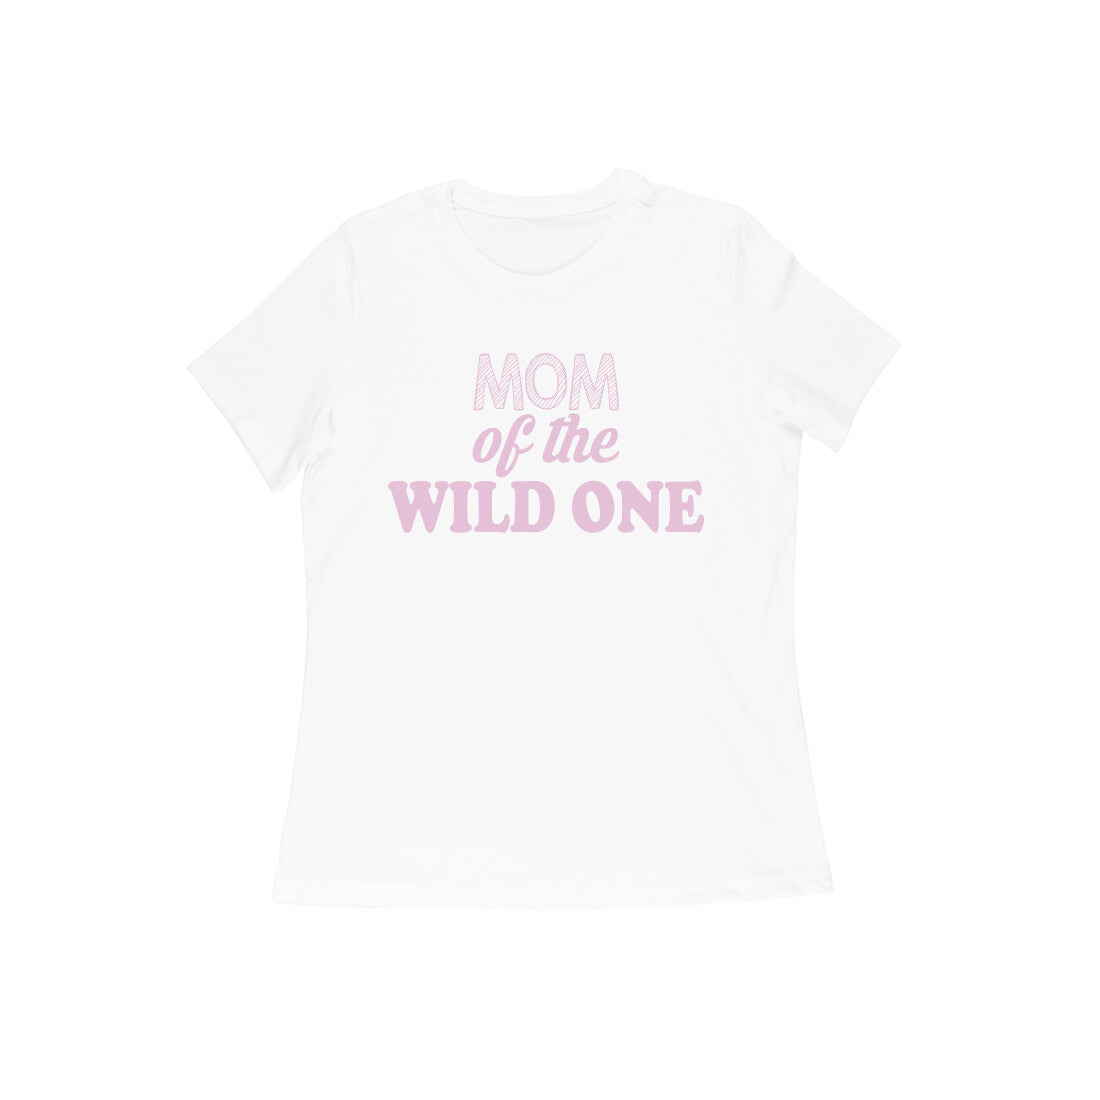 WOMEN'S ROUND NECK T-SHIRT - Mom of the wild one 2 puraidoprints